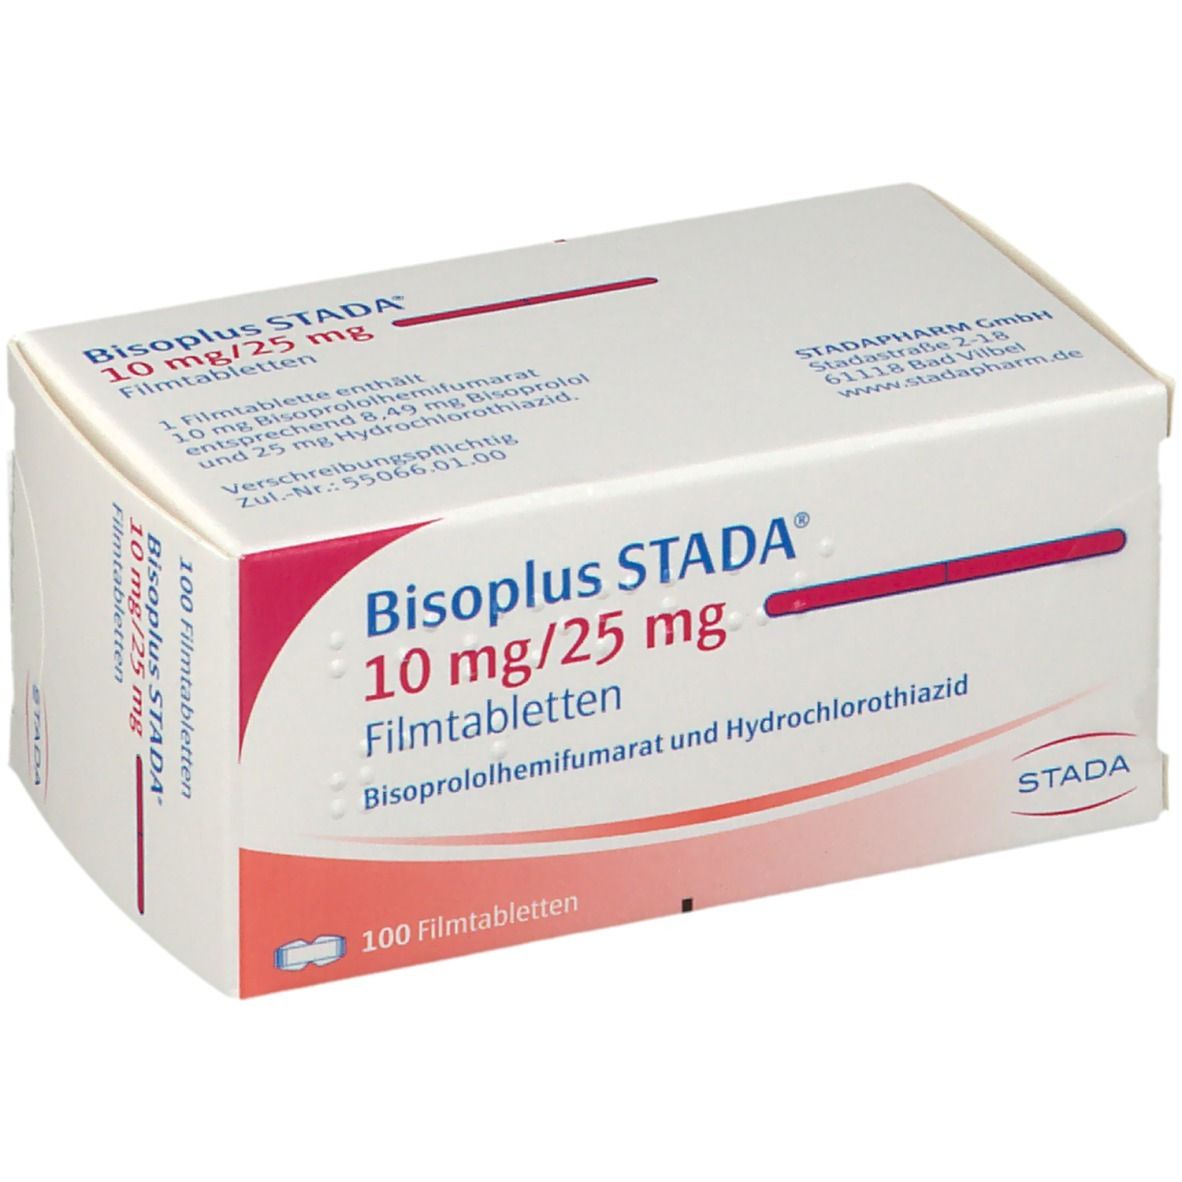 Bisoplus STADA® 10 mg/25 mg